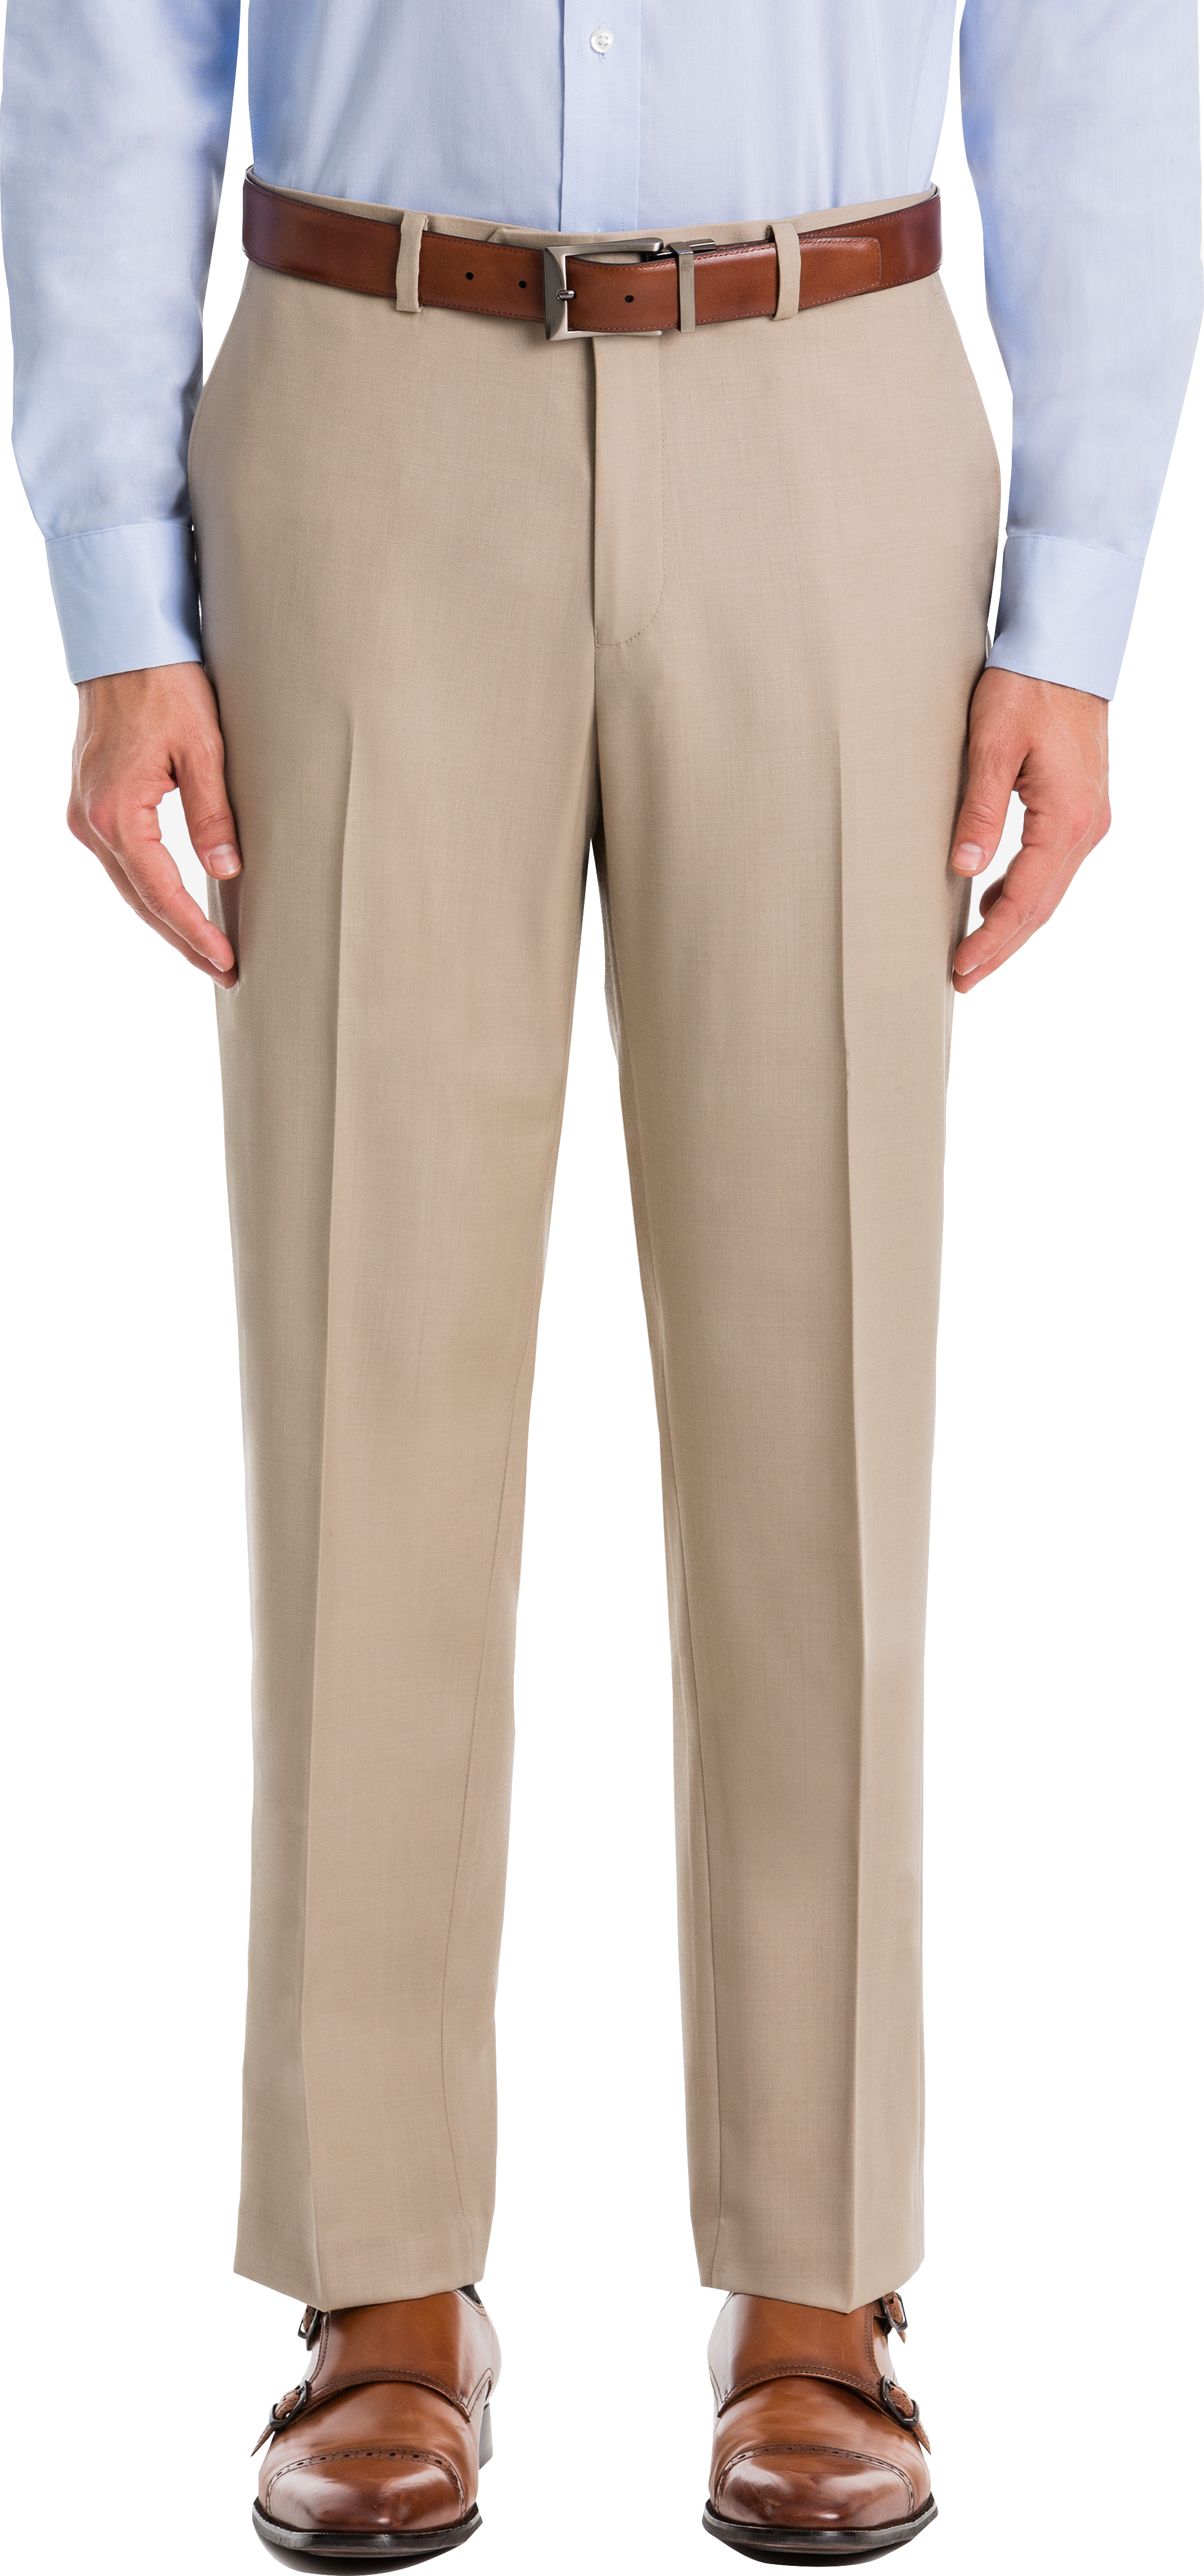 Lauren by Ralph Lauren Classic Fit Suit Separates Pants, Tan - Men's ...